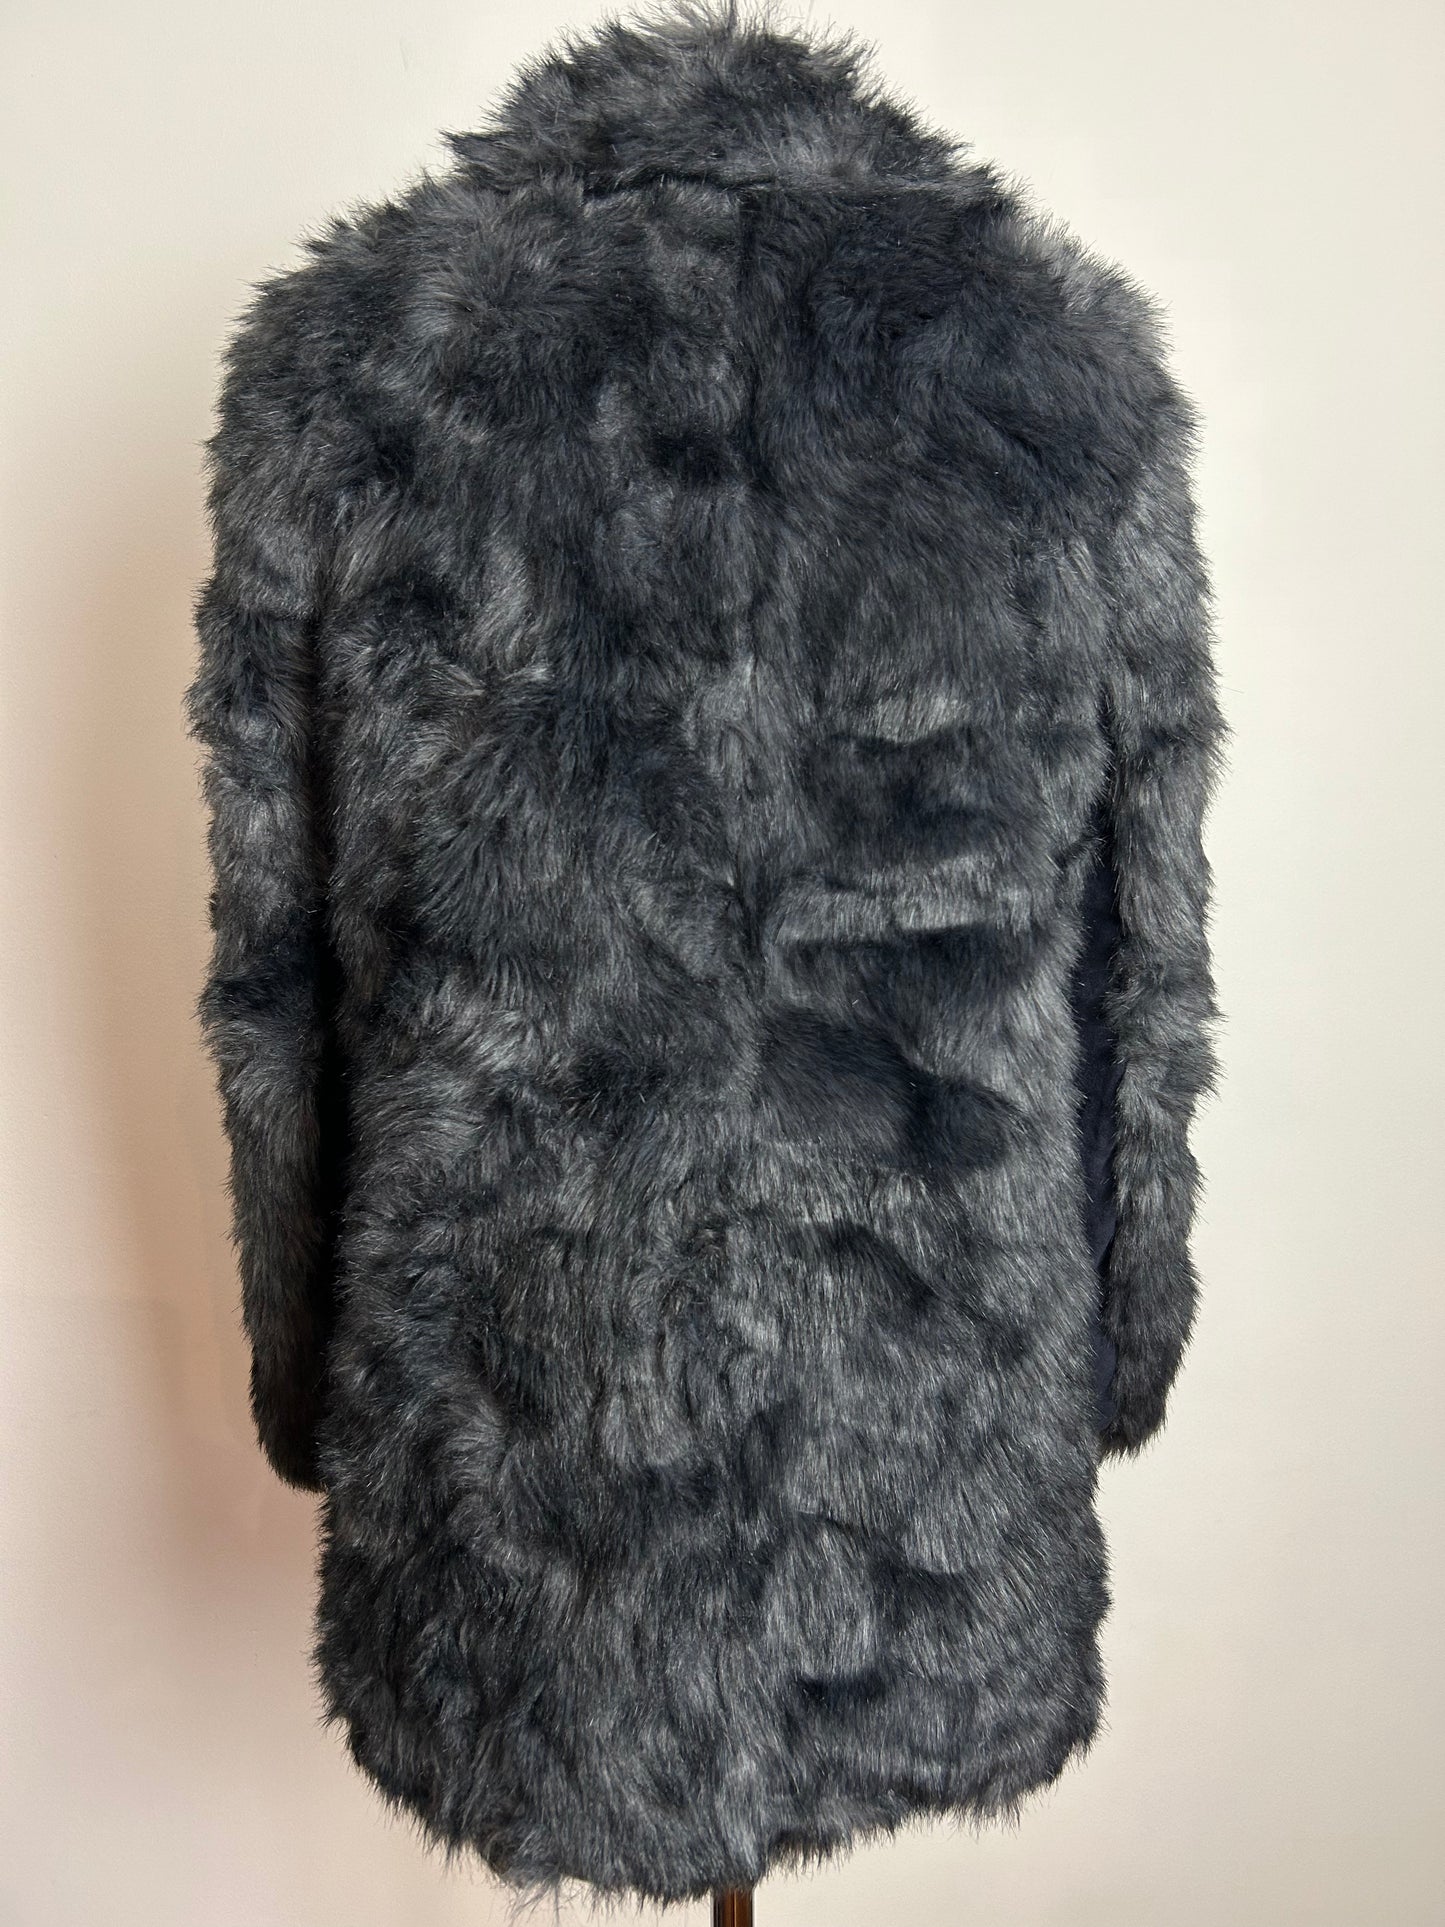 MODERN H&M Divided UK Size 10 Grey Faux Fur Coat Jacket